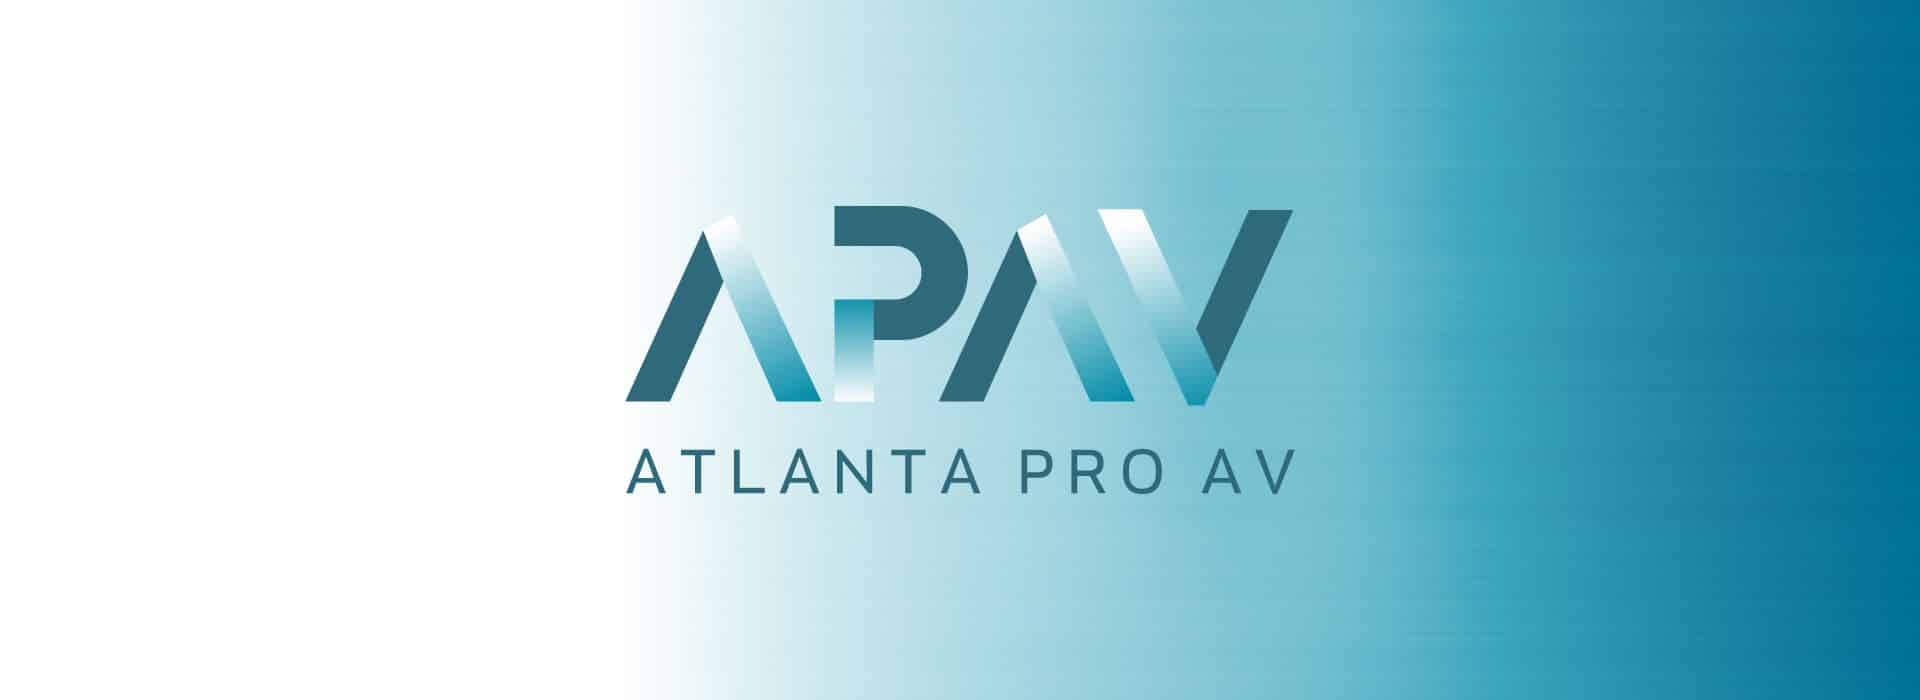 APAV Home Slide, Atlanta Pro AV